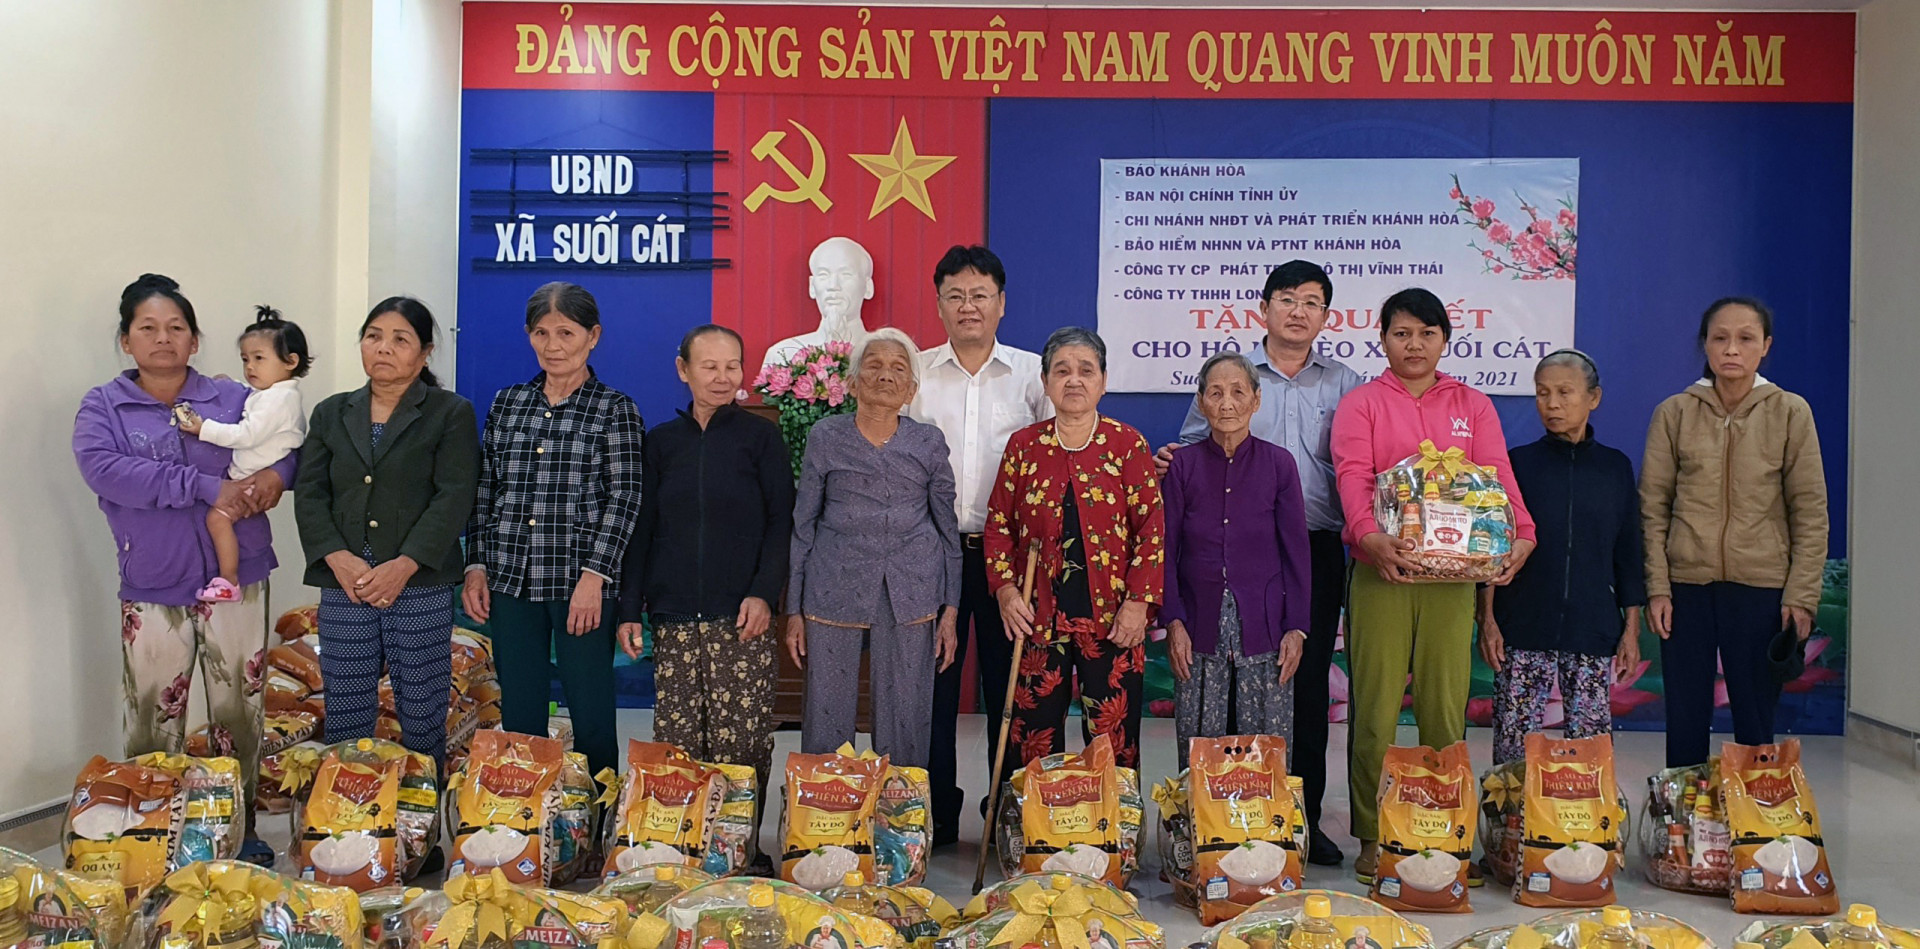 Lãnh đạo Báo Khánh Hòa và lãnh đạo Ngân hàng BIDV Chi nhánh Khánh Hòa trao quà Tết cho người dân